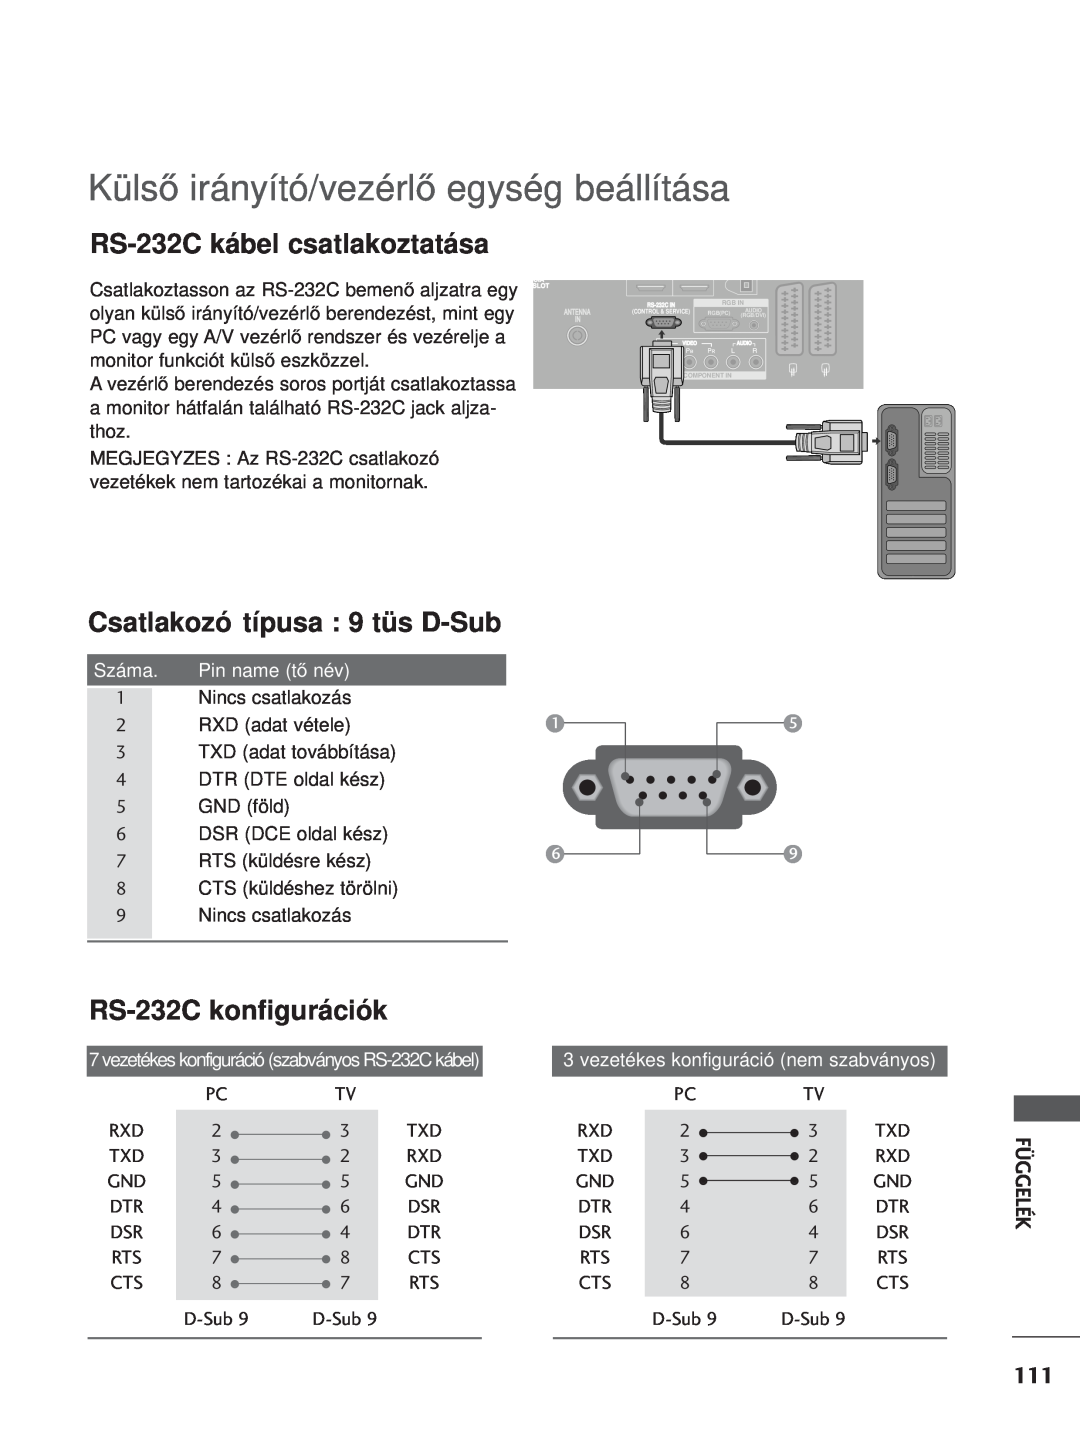 LG Electronics 4422PPTT88 manual RS-232C kábel csatlakoztatása, Csatlakozó típusa 9 tüs D-Sub, RS-232C konfigurációk, Száma 